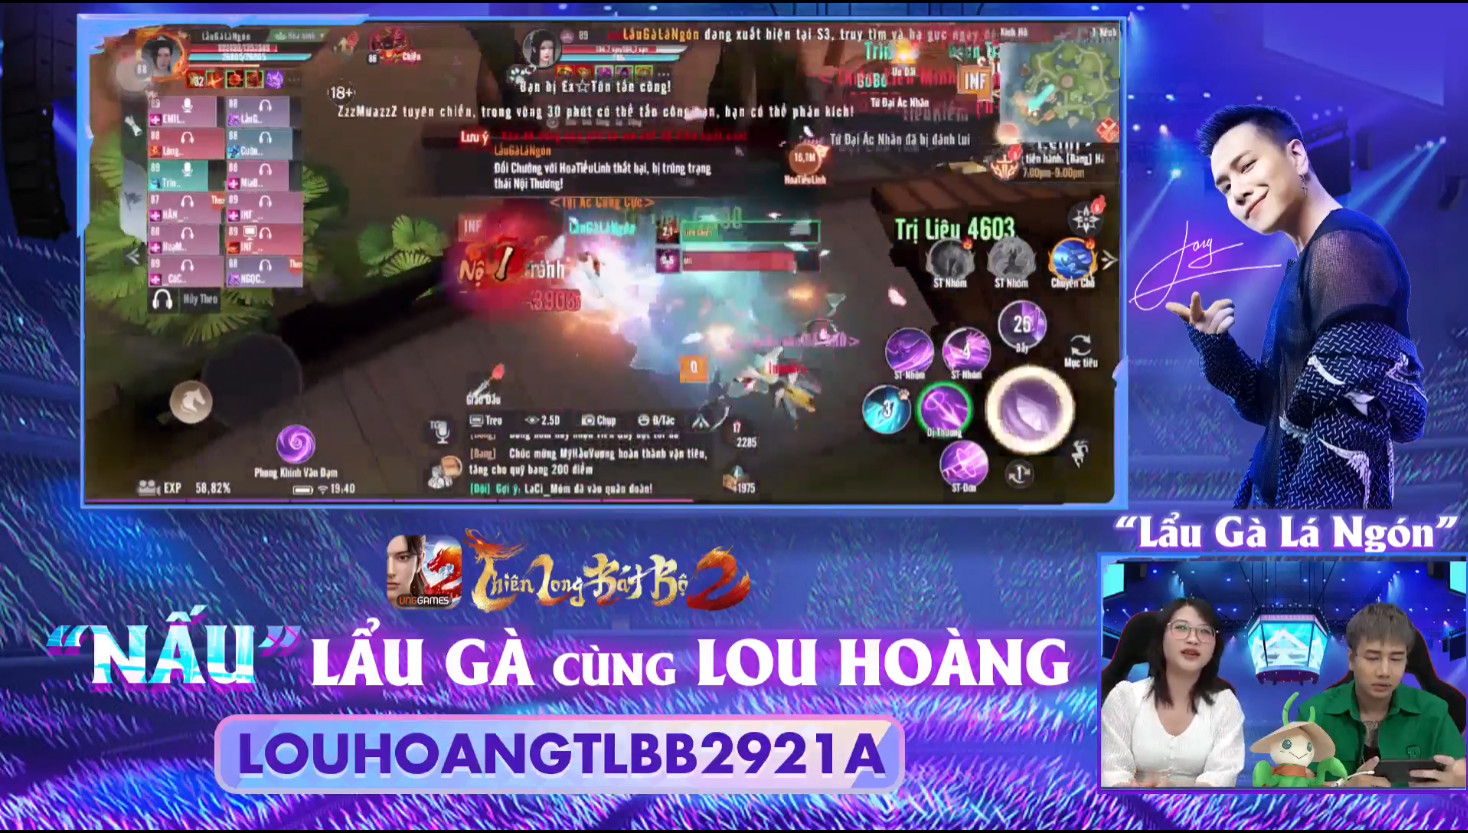 Lou Hoàng thức dậy lúc 4 giờ sáng để chơi Thiên Long Bát Bộ 2 VNG